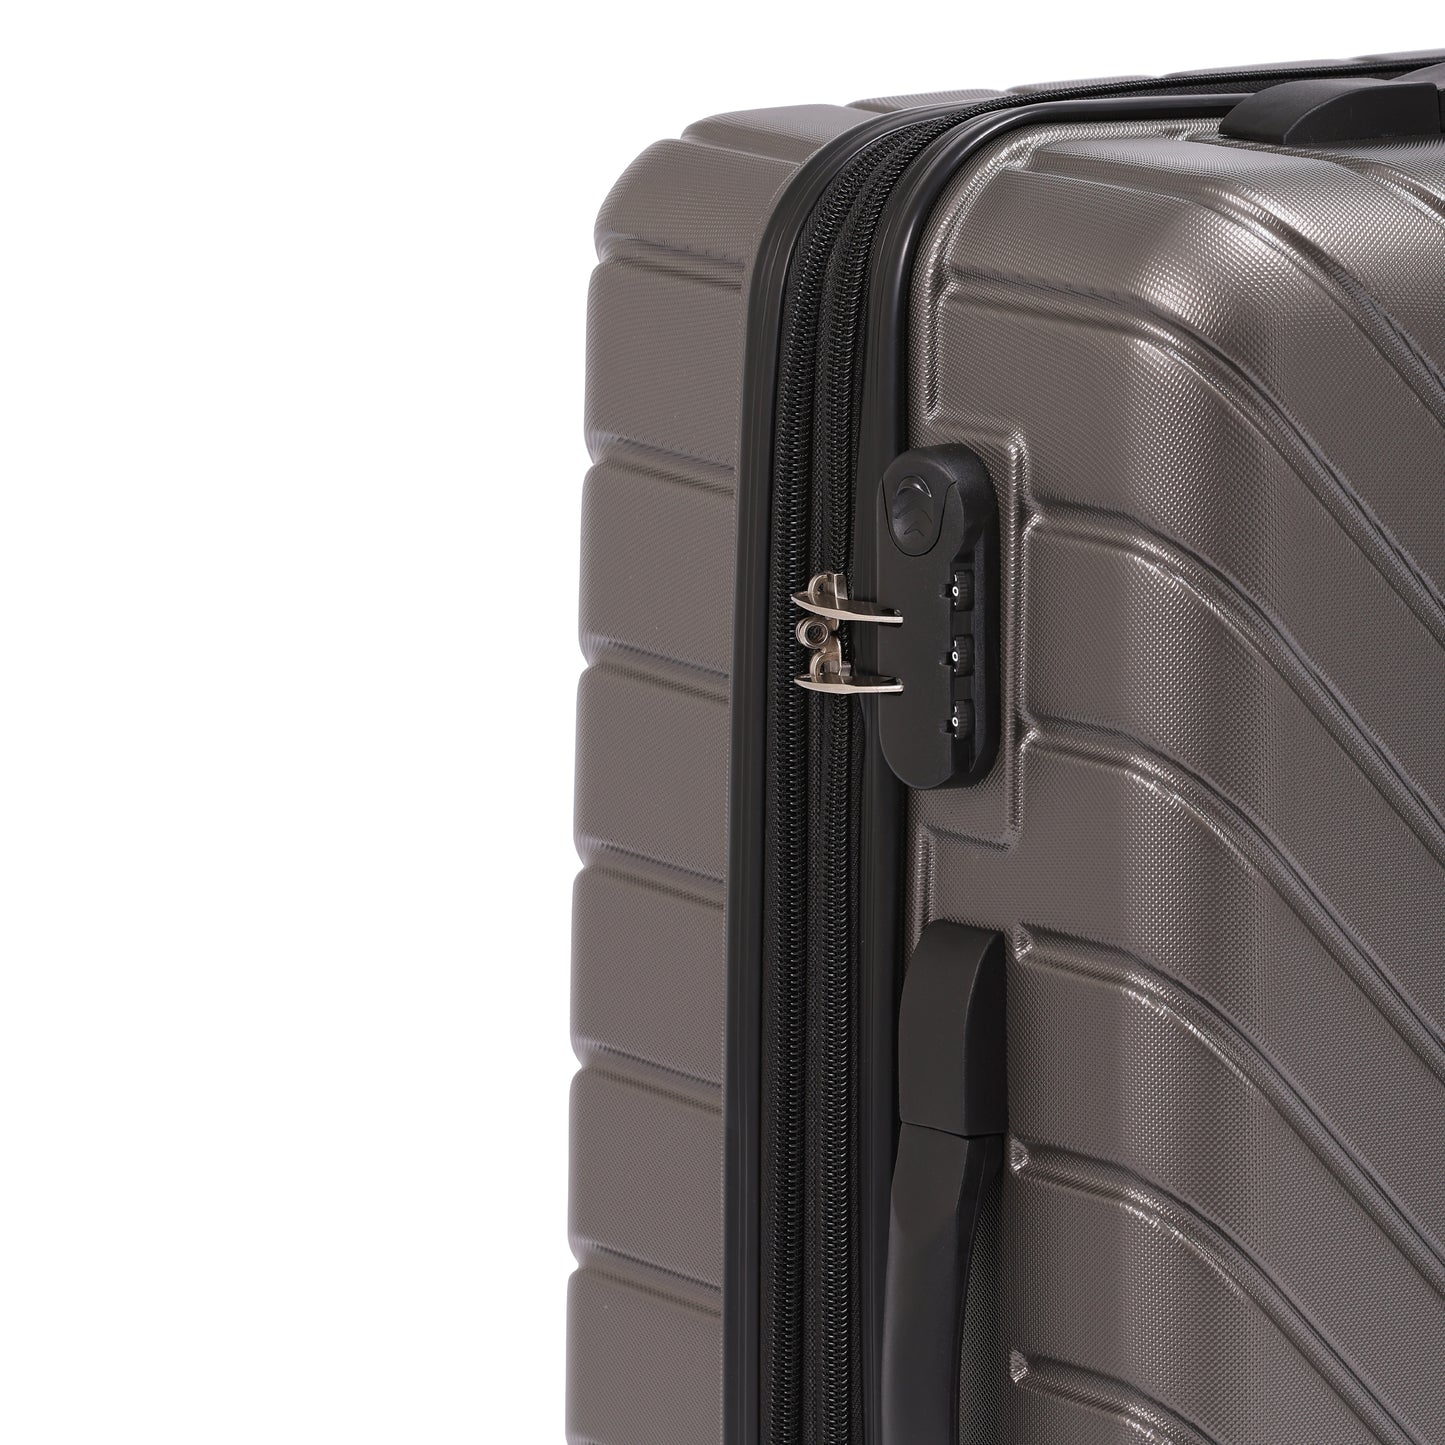 Cosmo Galaxy 4W 50 cm Hard Luggage Trolley Case